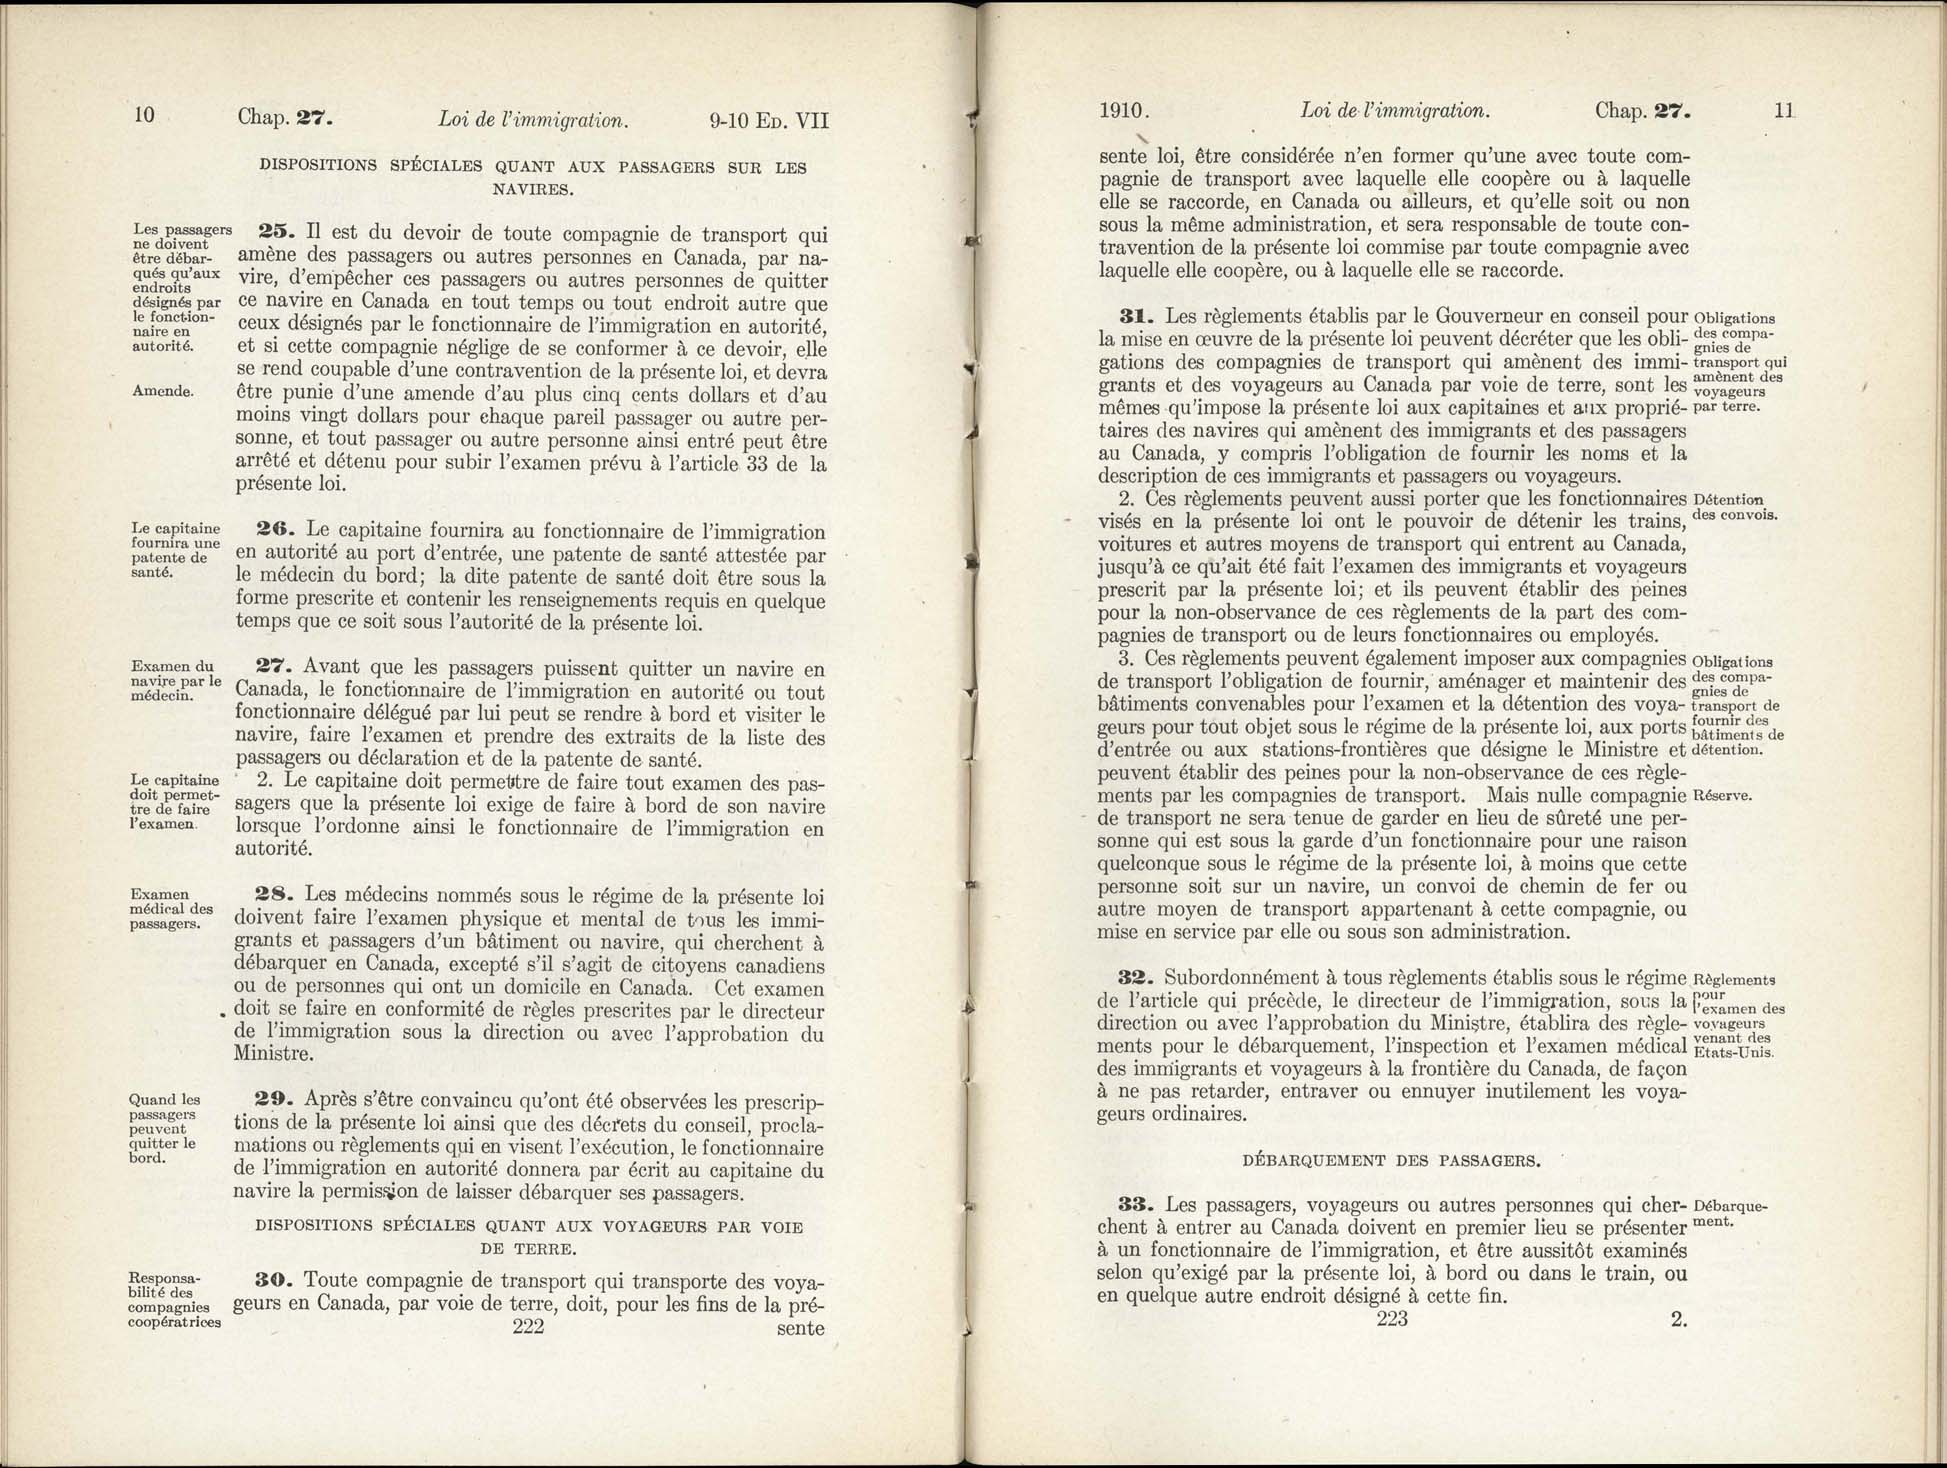 Chap 27 Page 222, 223 L’Acte d’immigration, 1910